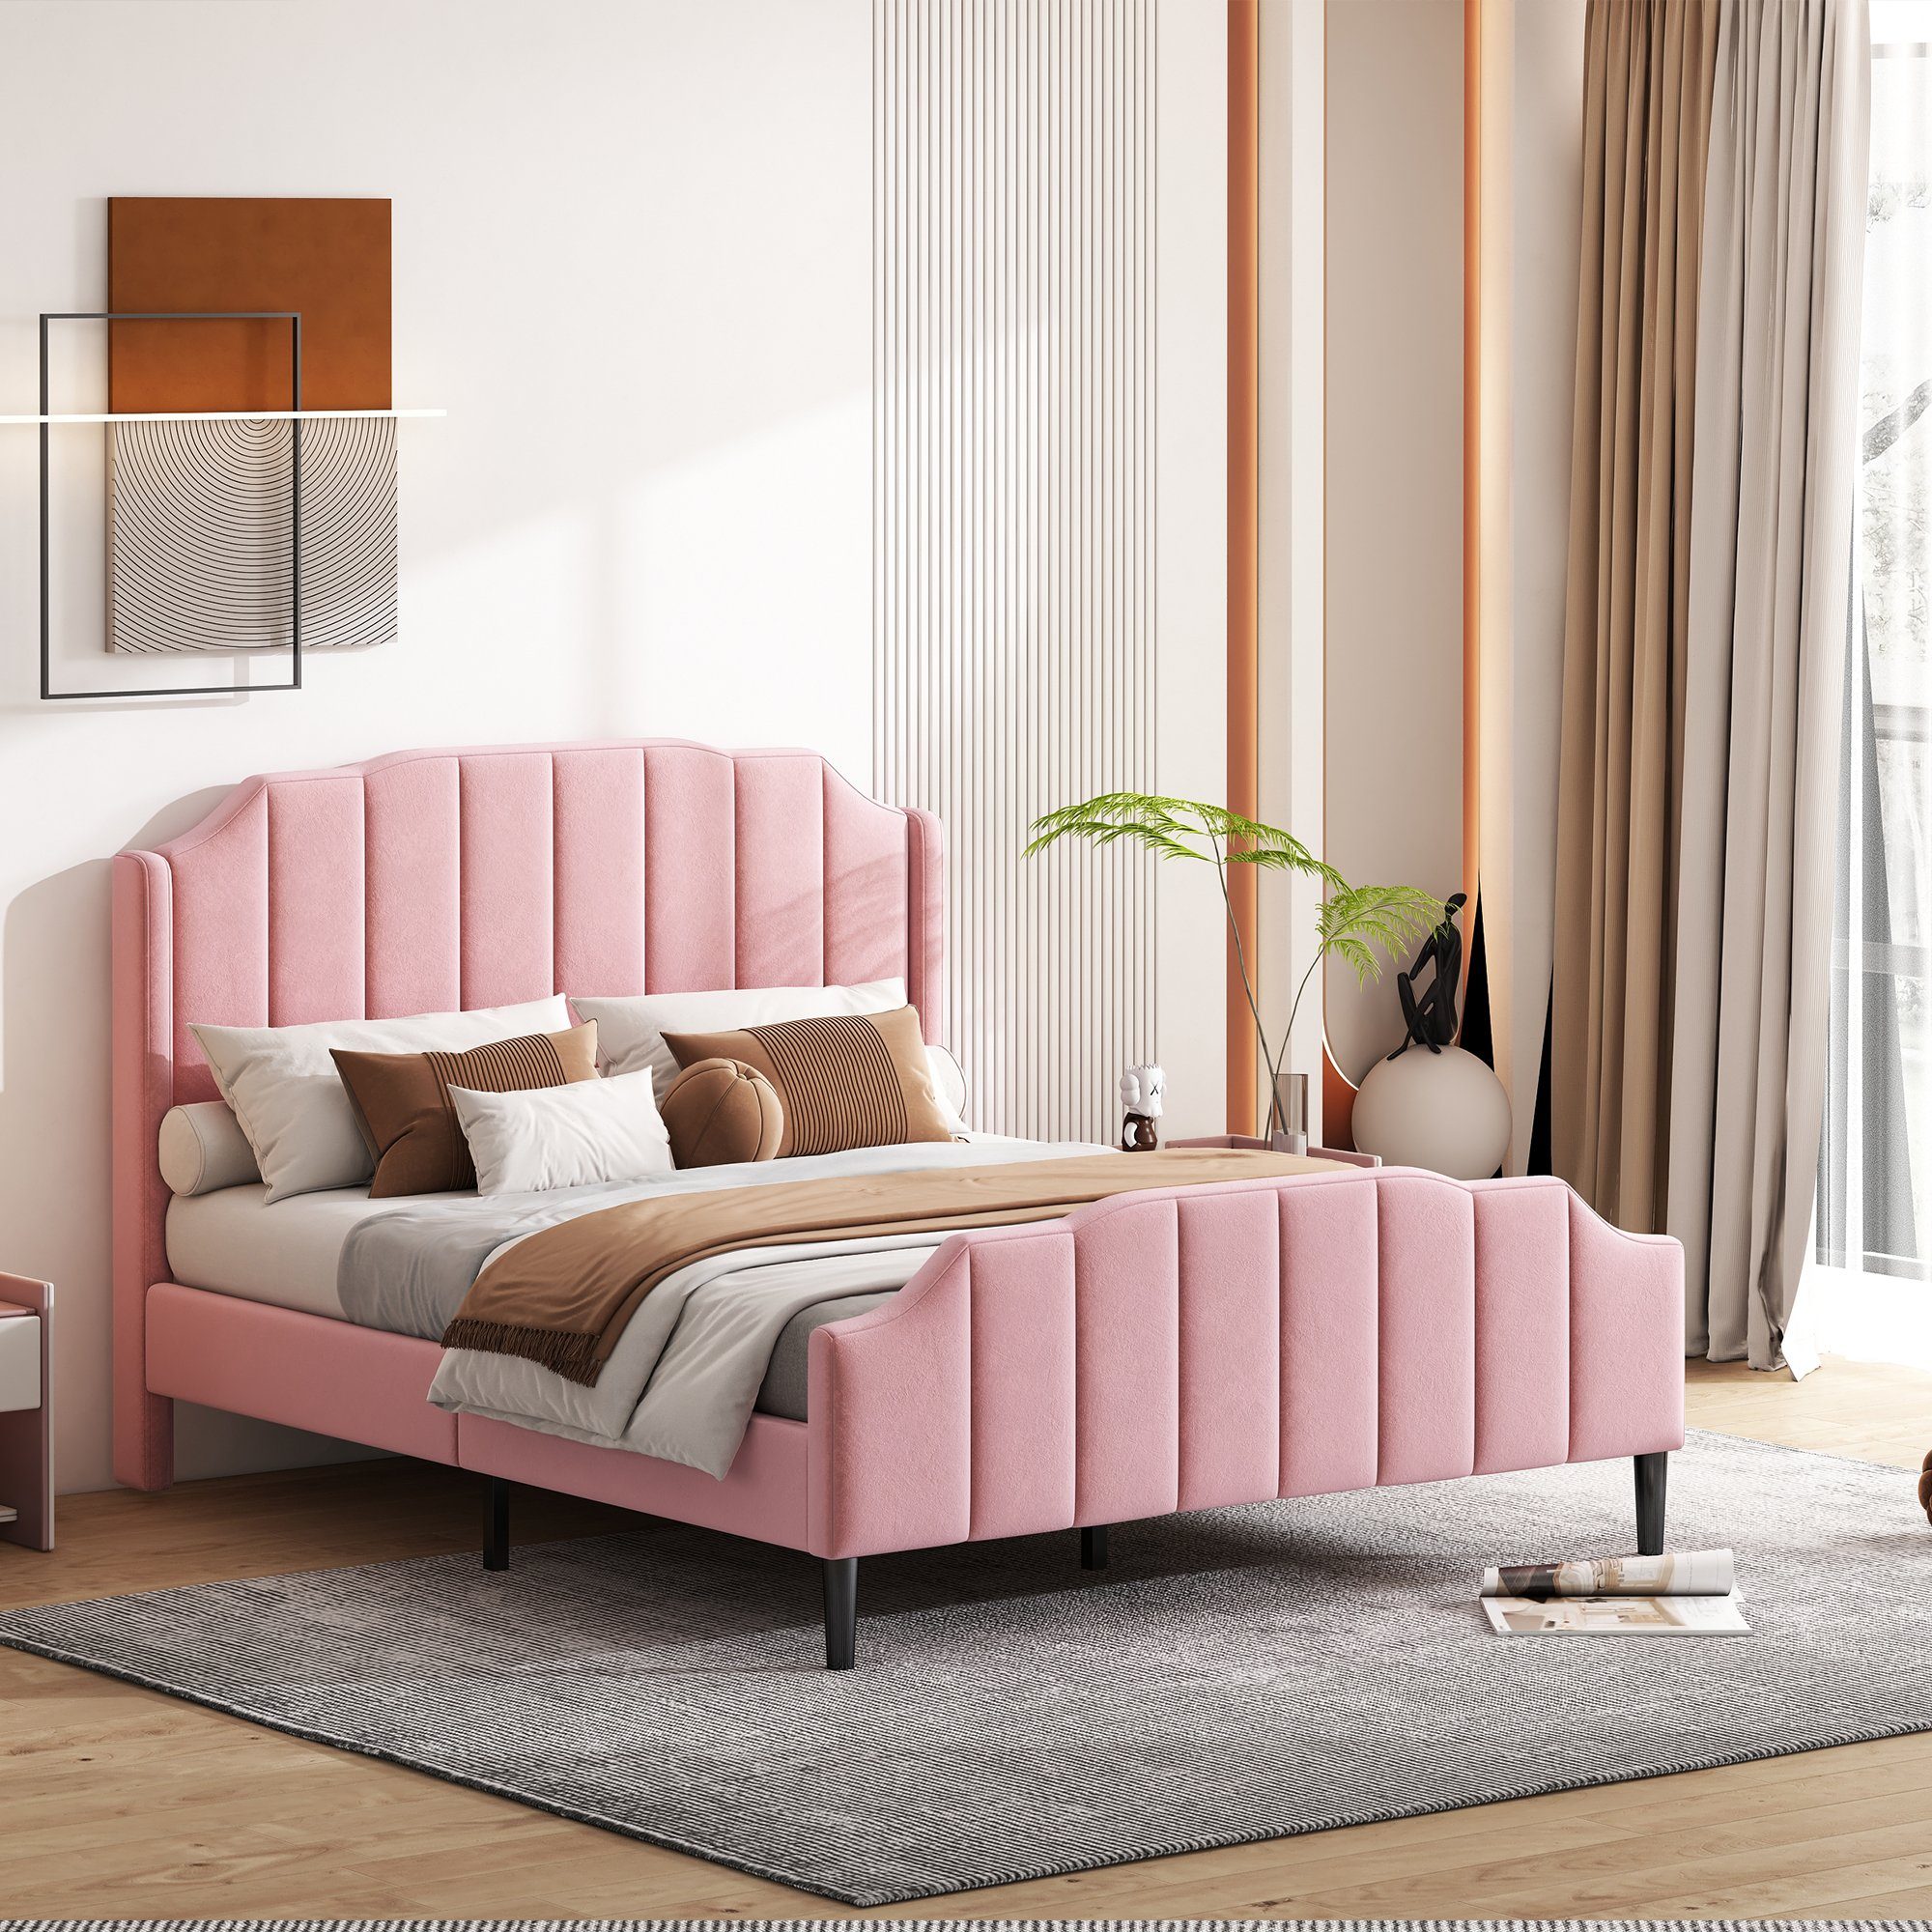 Flieks Polsterbett, Doppelbett Kinderbett mit Lattenrost Samt 140x200cm rosa